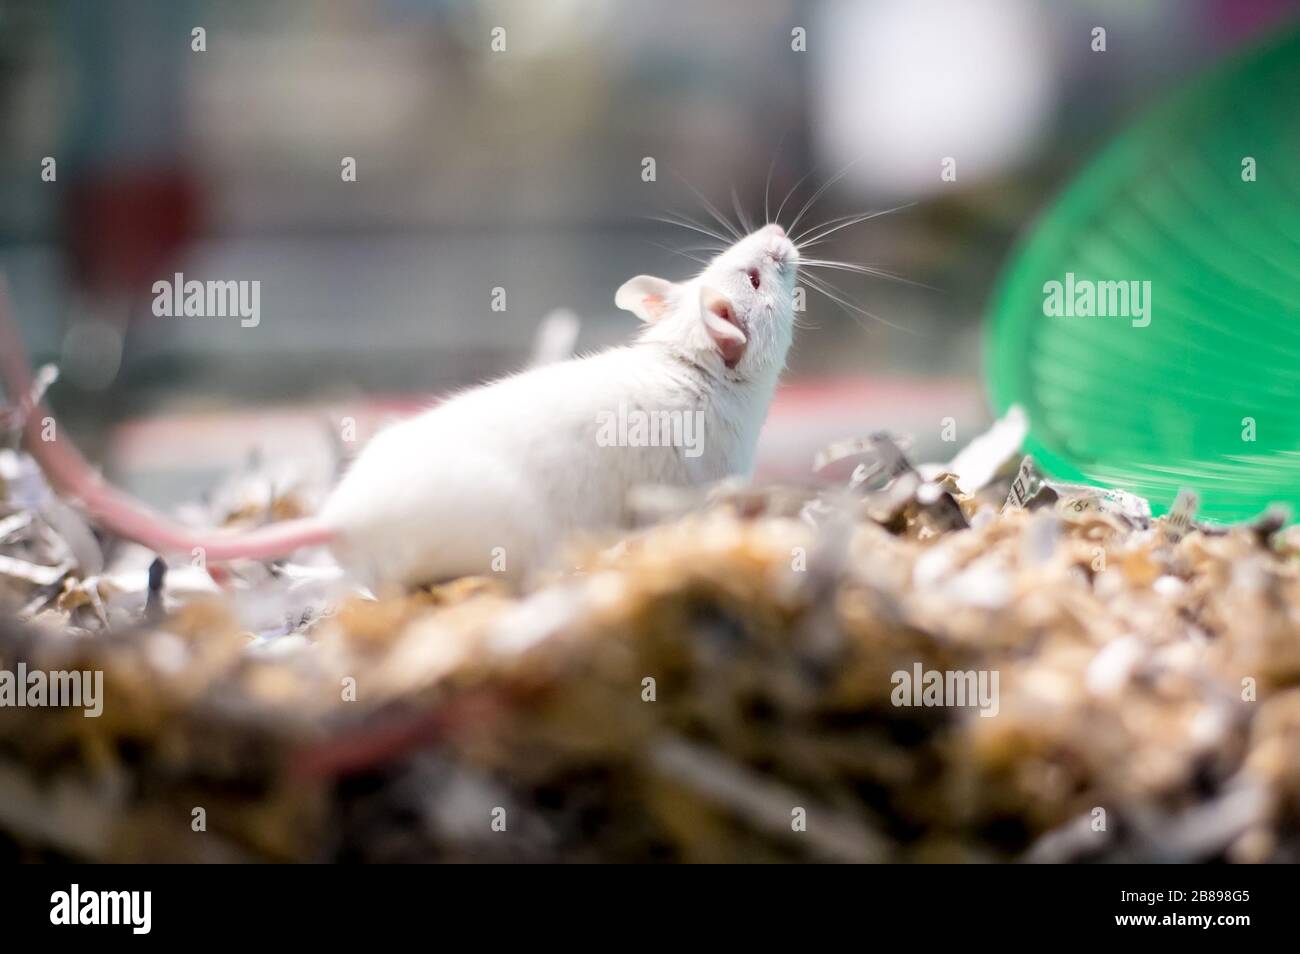 Un ratón blanco para mascotas en una jaula llena de papel desmenuzado Foto de stock